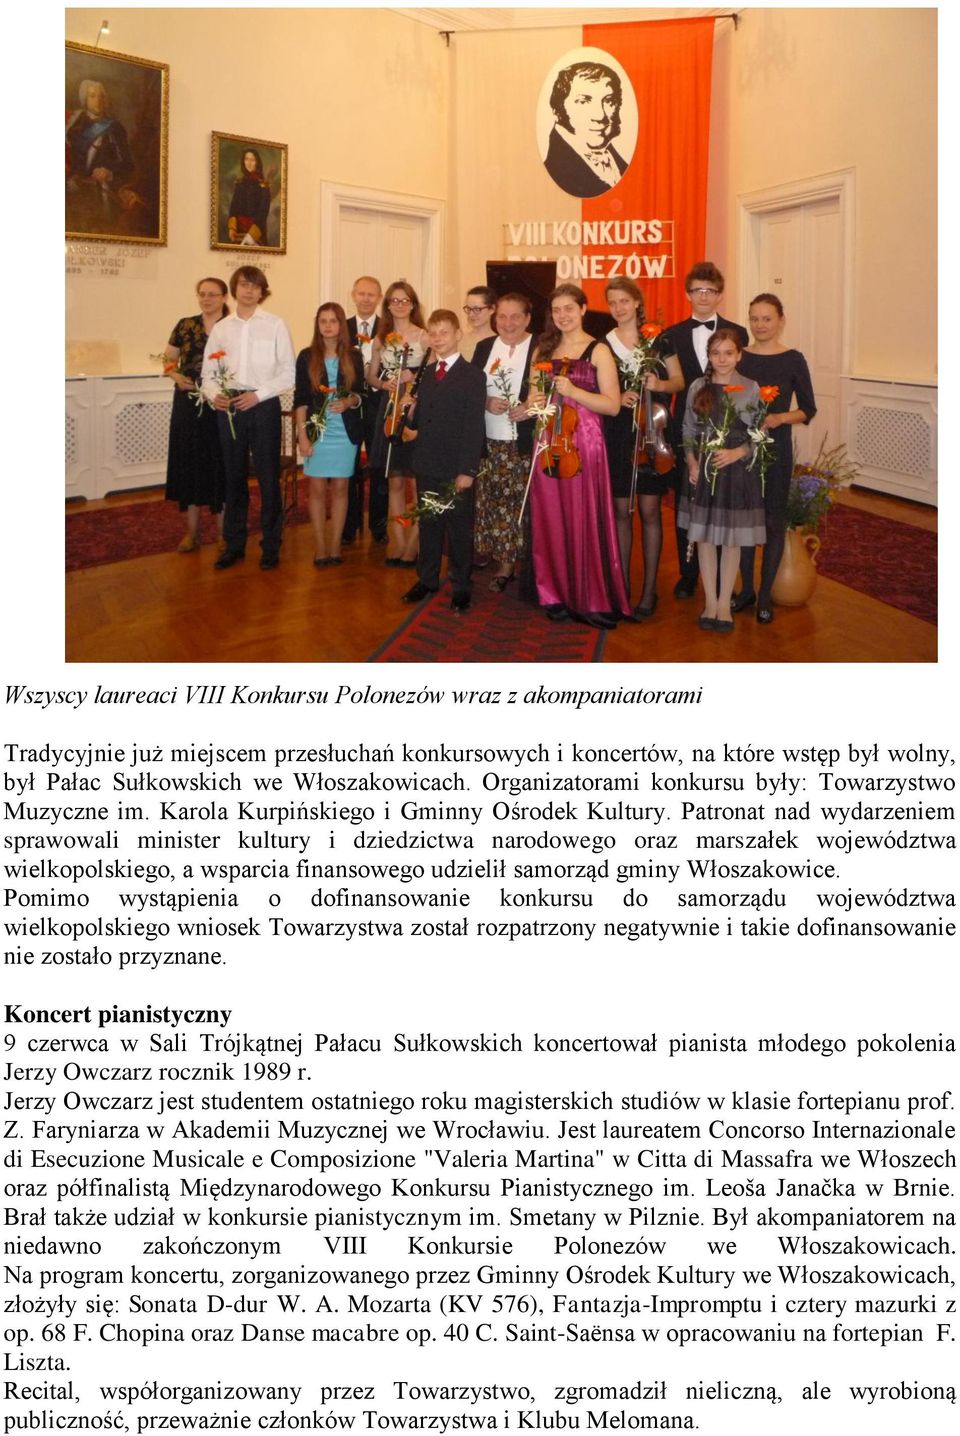 Patronat nad wydarzeniem sprawowali minister kultury i dziedzictwa narodowego oraz marszałek województwa wielkopolskiego, a wsparcia finansowego udzielił samorząd gminy Włoszakowice.